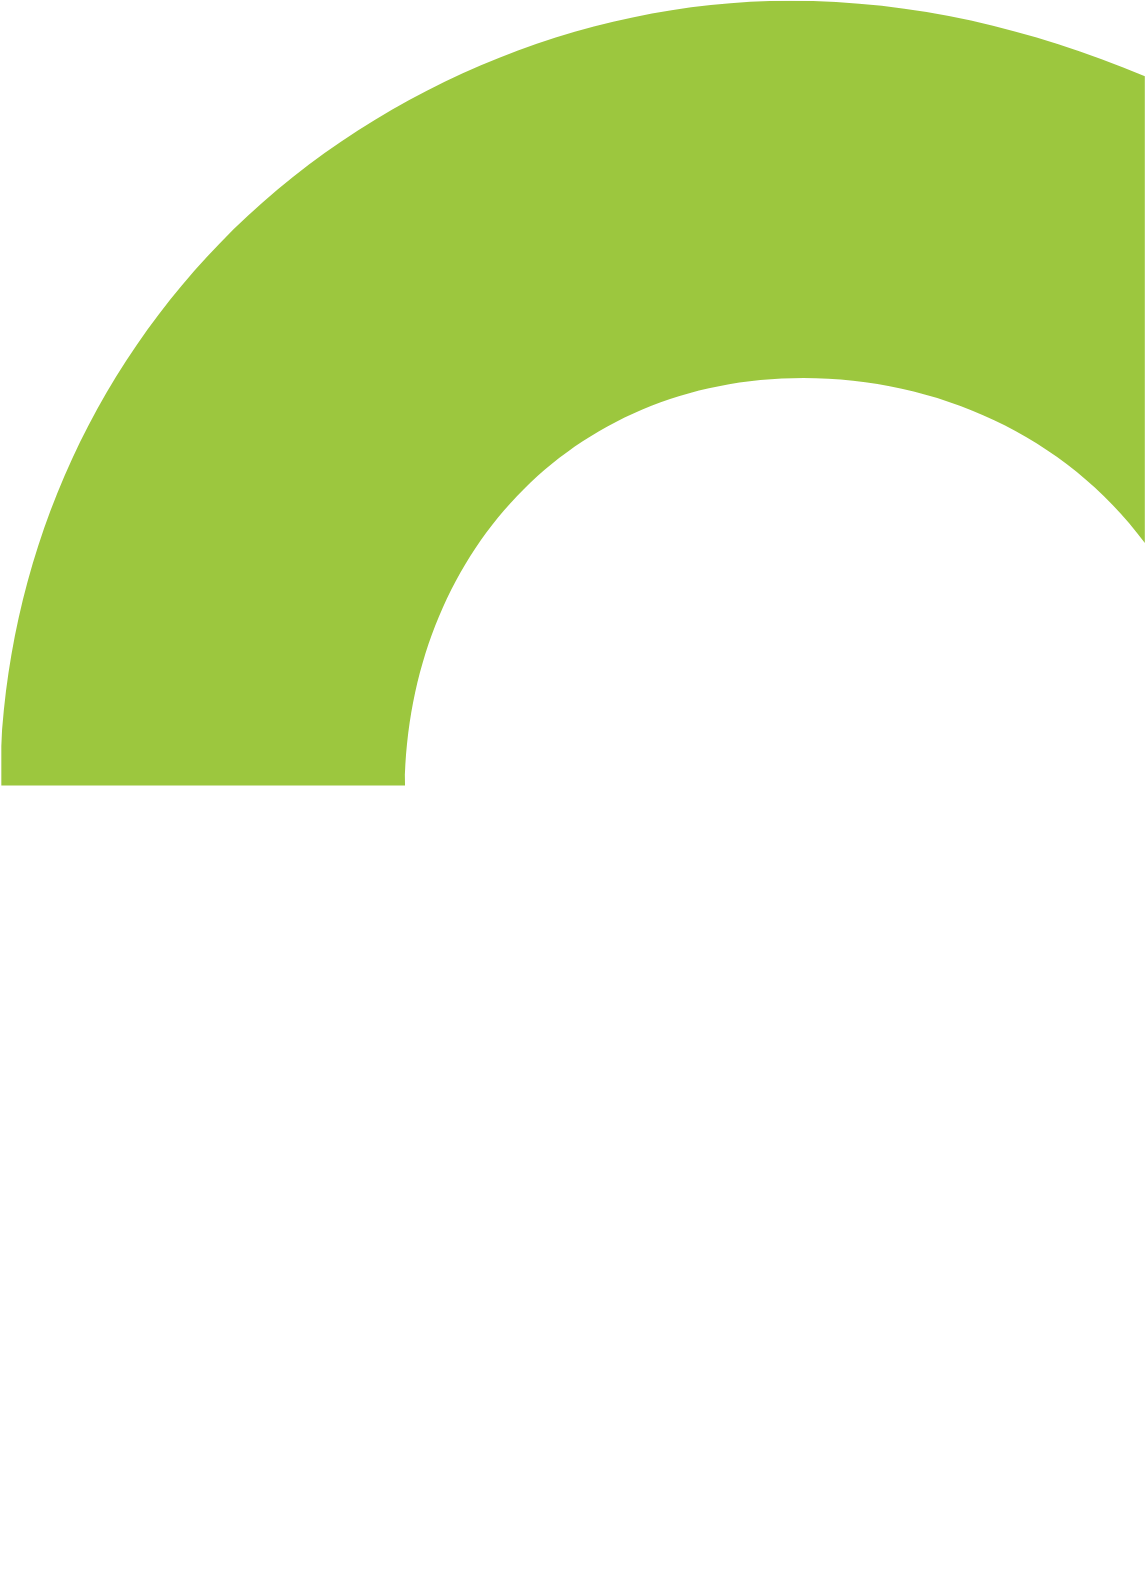 Cemtrex logo for dark backgrounds (transparent PNG)